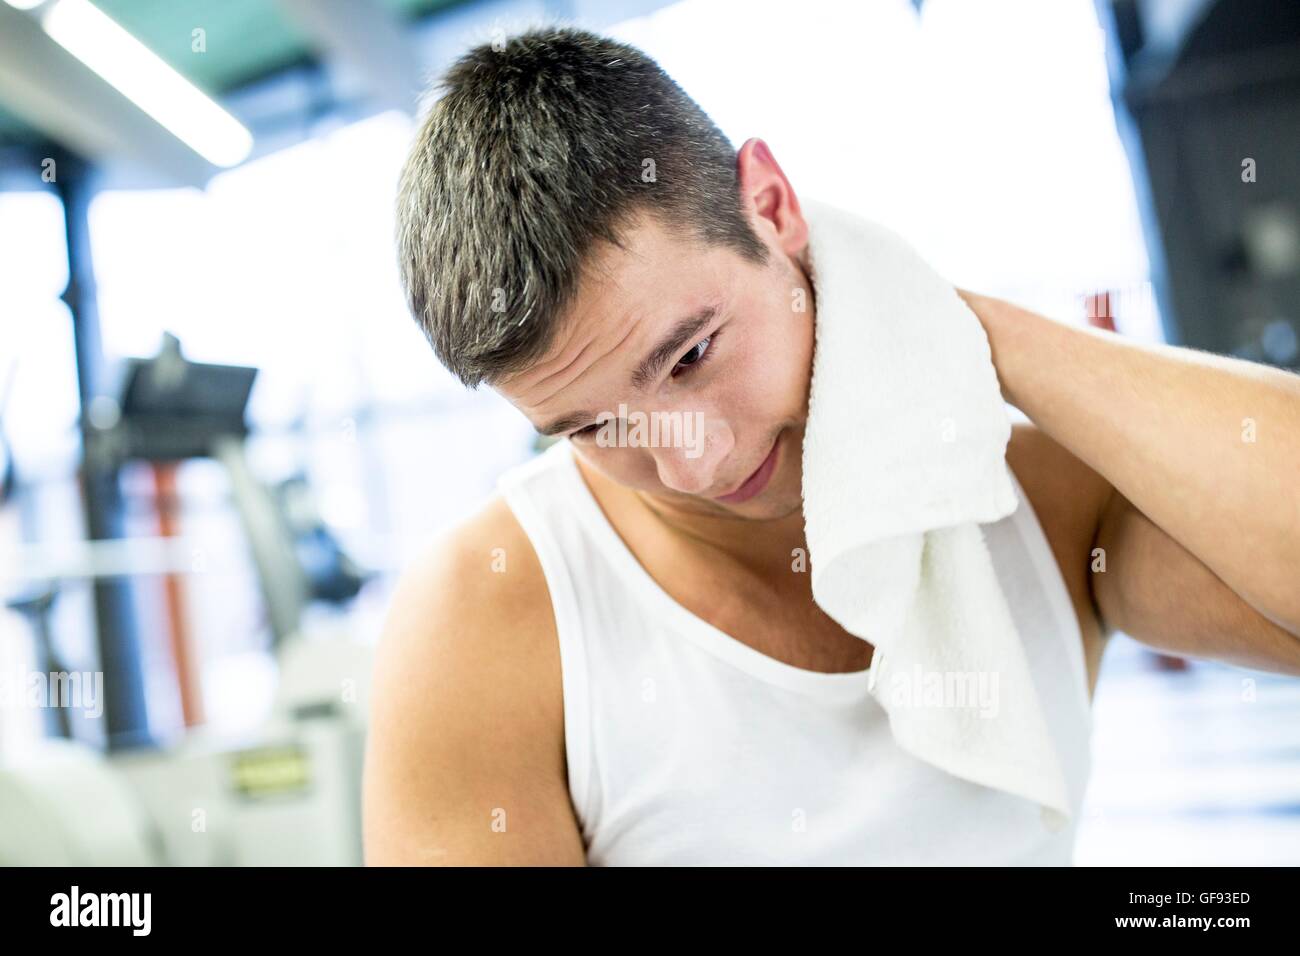 Proprietà rilasciato. Modello rilasciato. Giovane uomo tergi il suo sudore con asciugamano dopo esercizio in palestra. Foto Stock